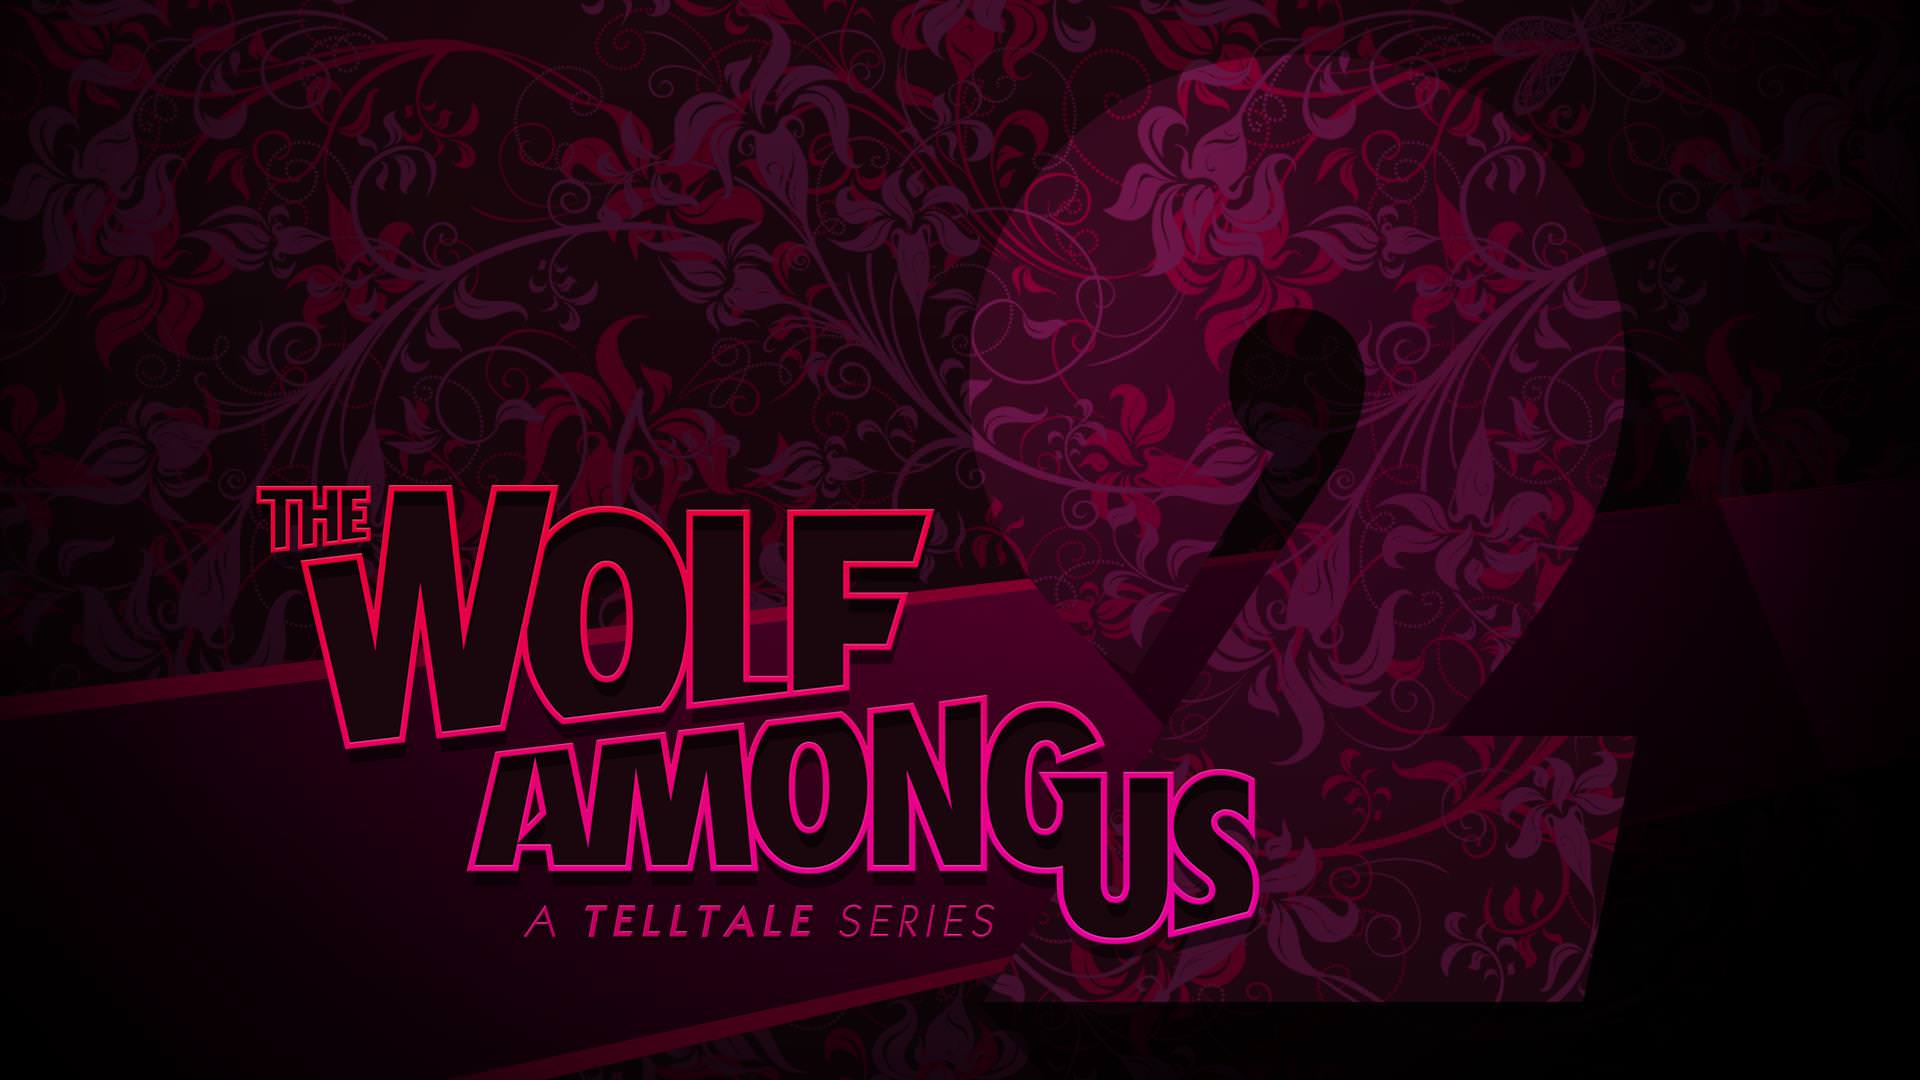 فردا شاهد ارائه اطلاعات جدید از بازی The Wolf Among Us 2 خواهیم بود